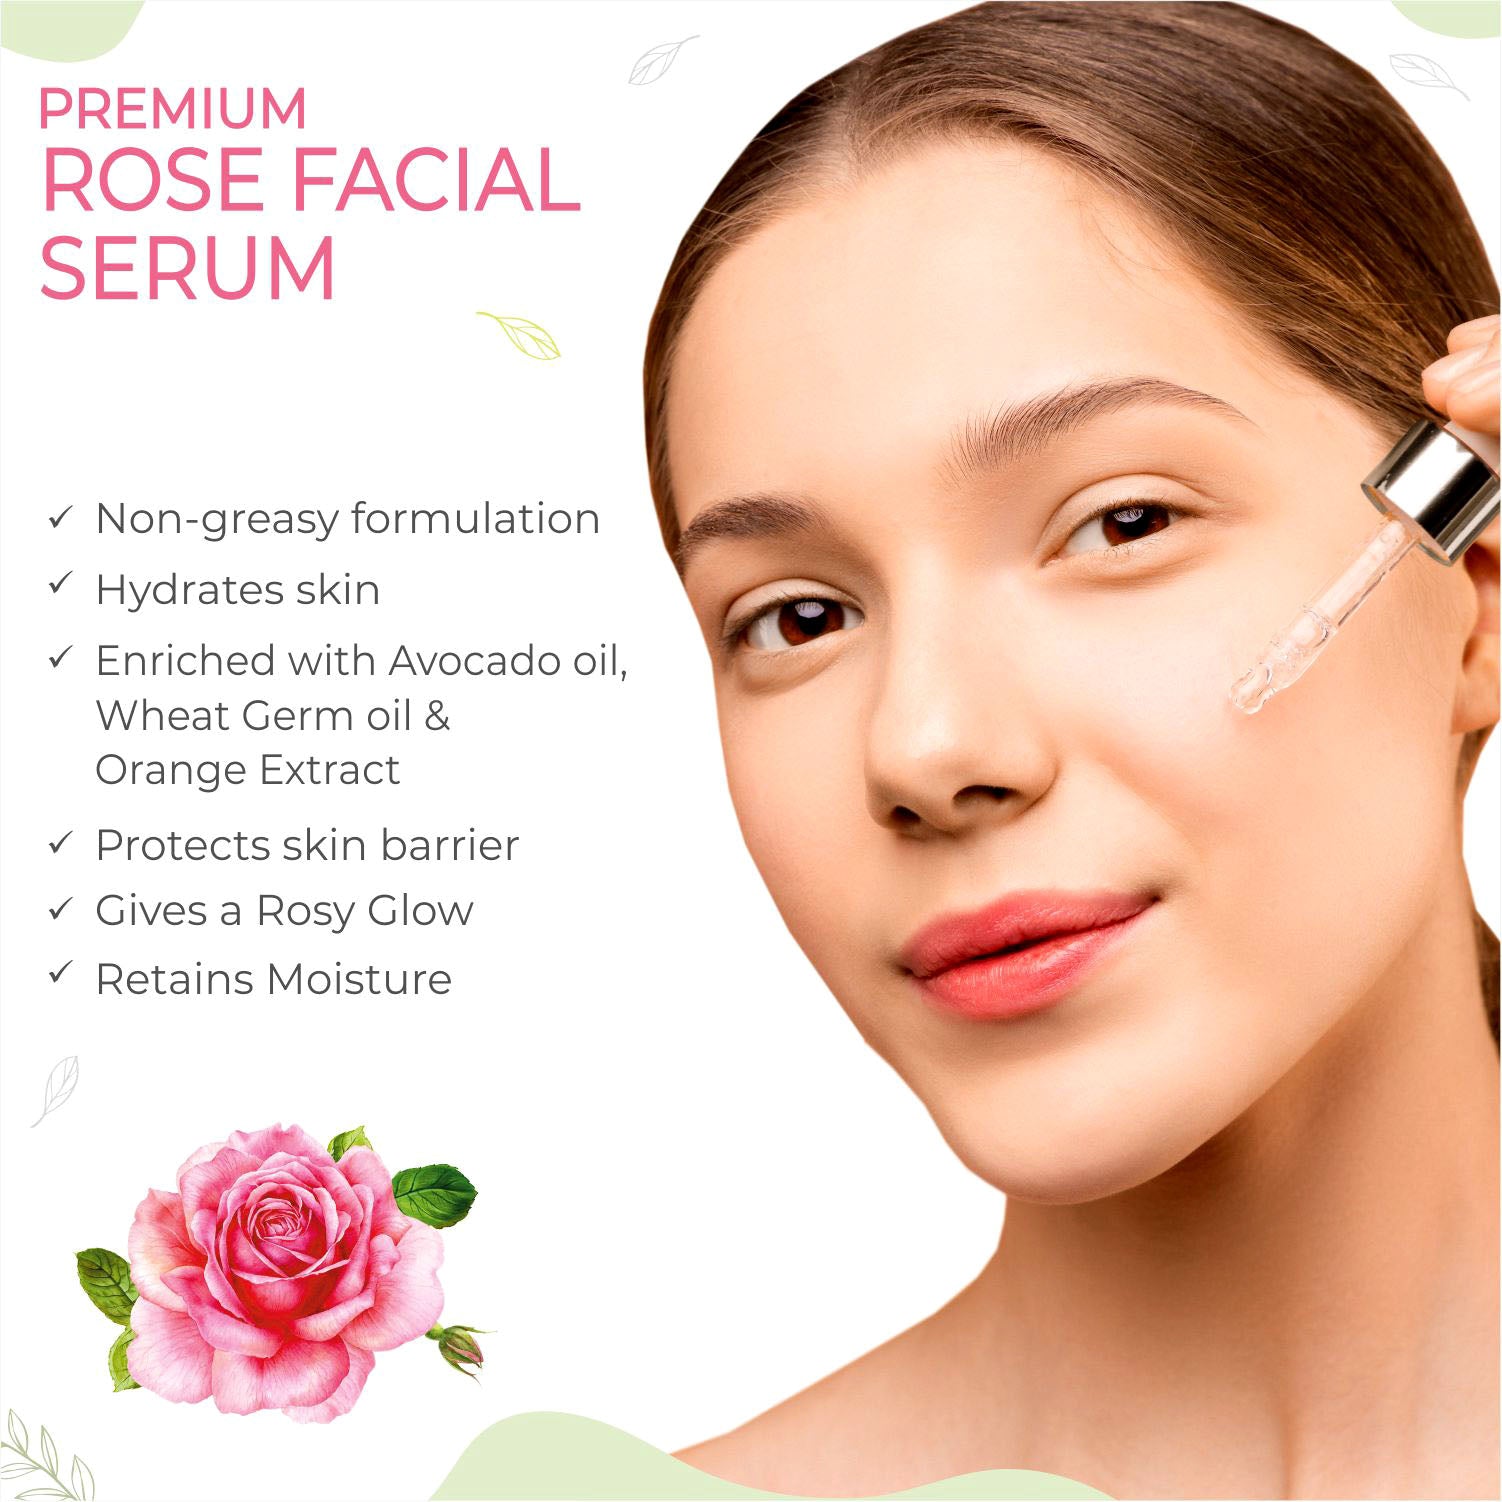 APĀPA Premium Rose Facial Serum